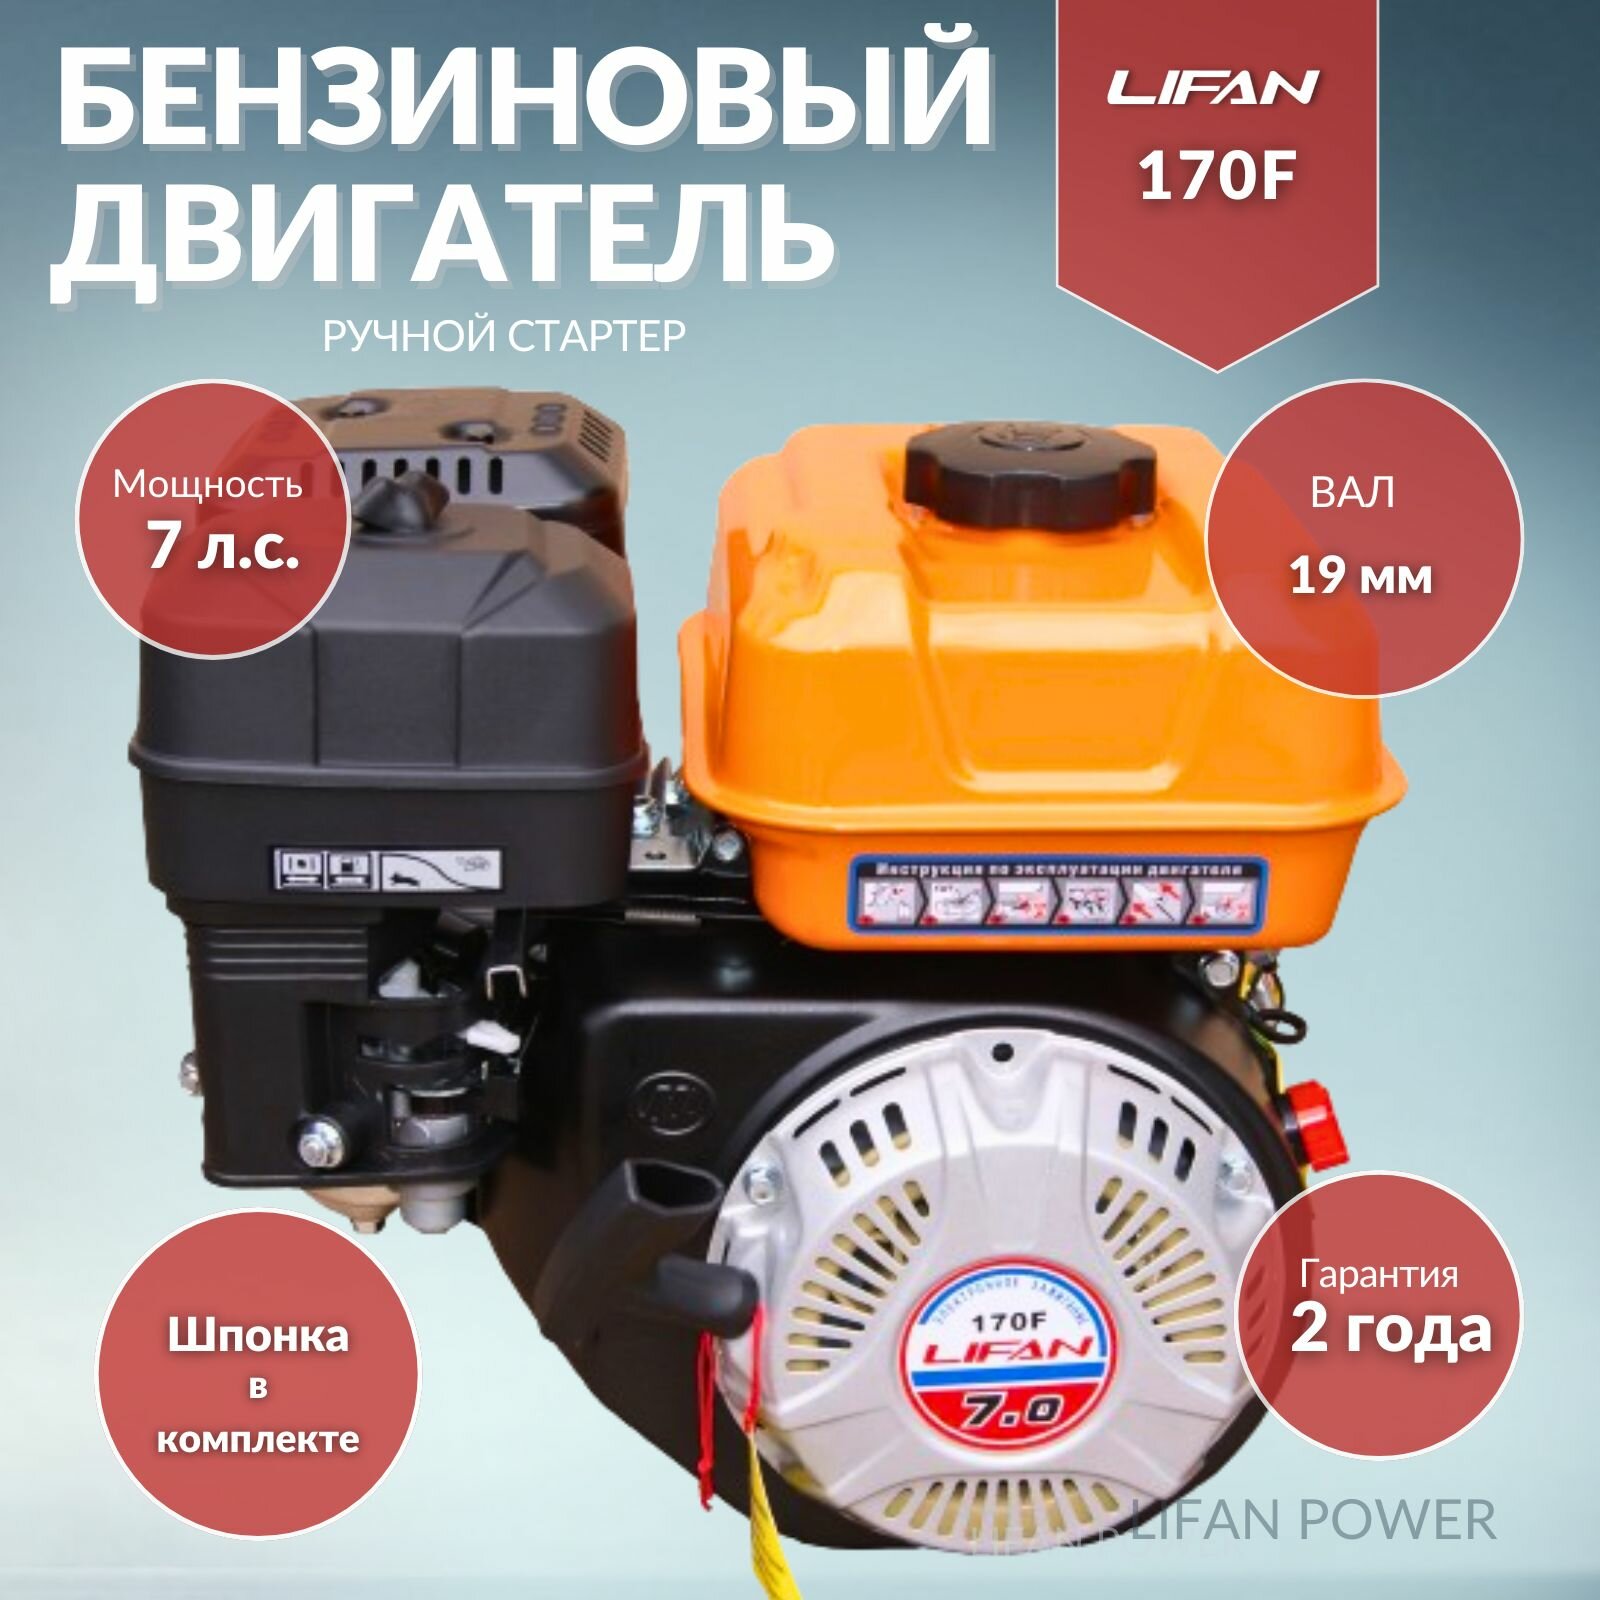 Бензиновый двигатель LIFAN 170F (вал 19, 7 л.с.) для Мотоблока, Культиватора, Виброплиты, Мотопомпы